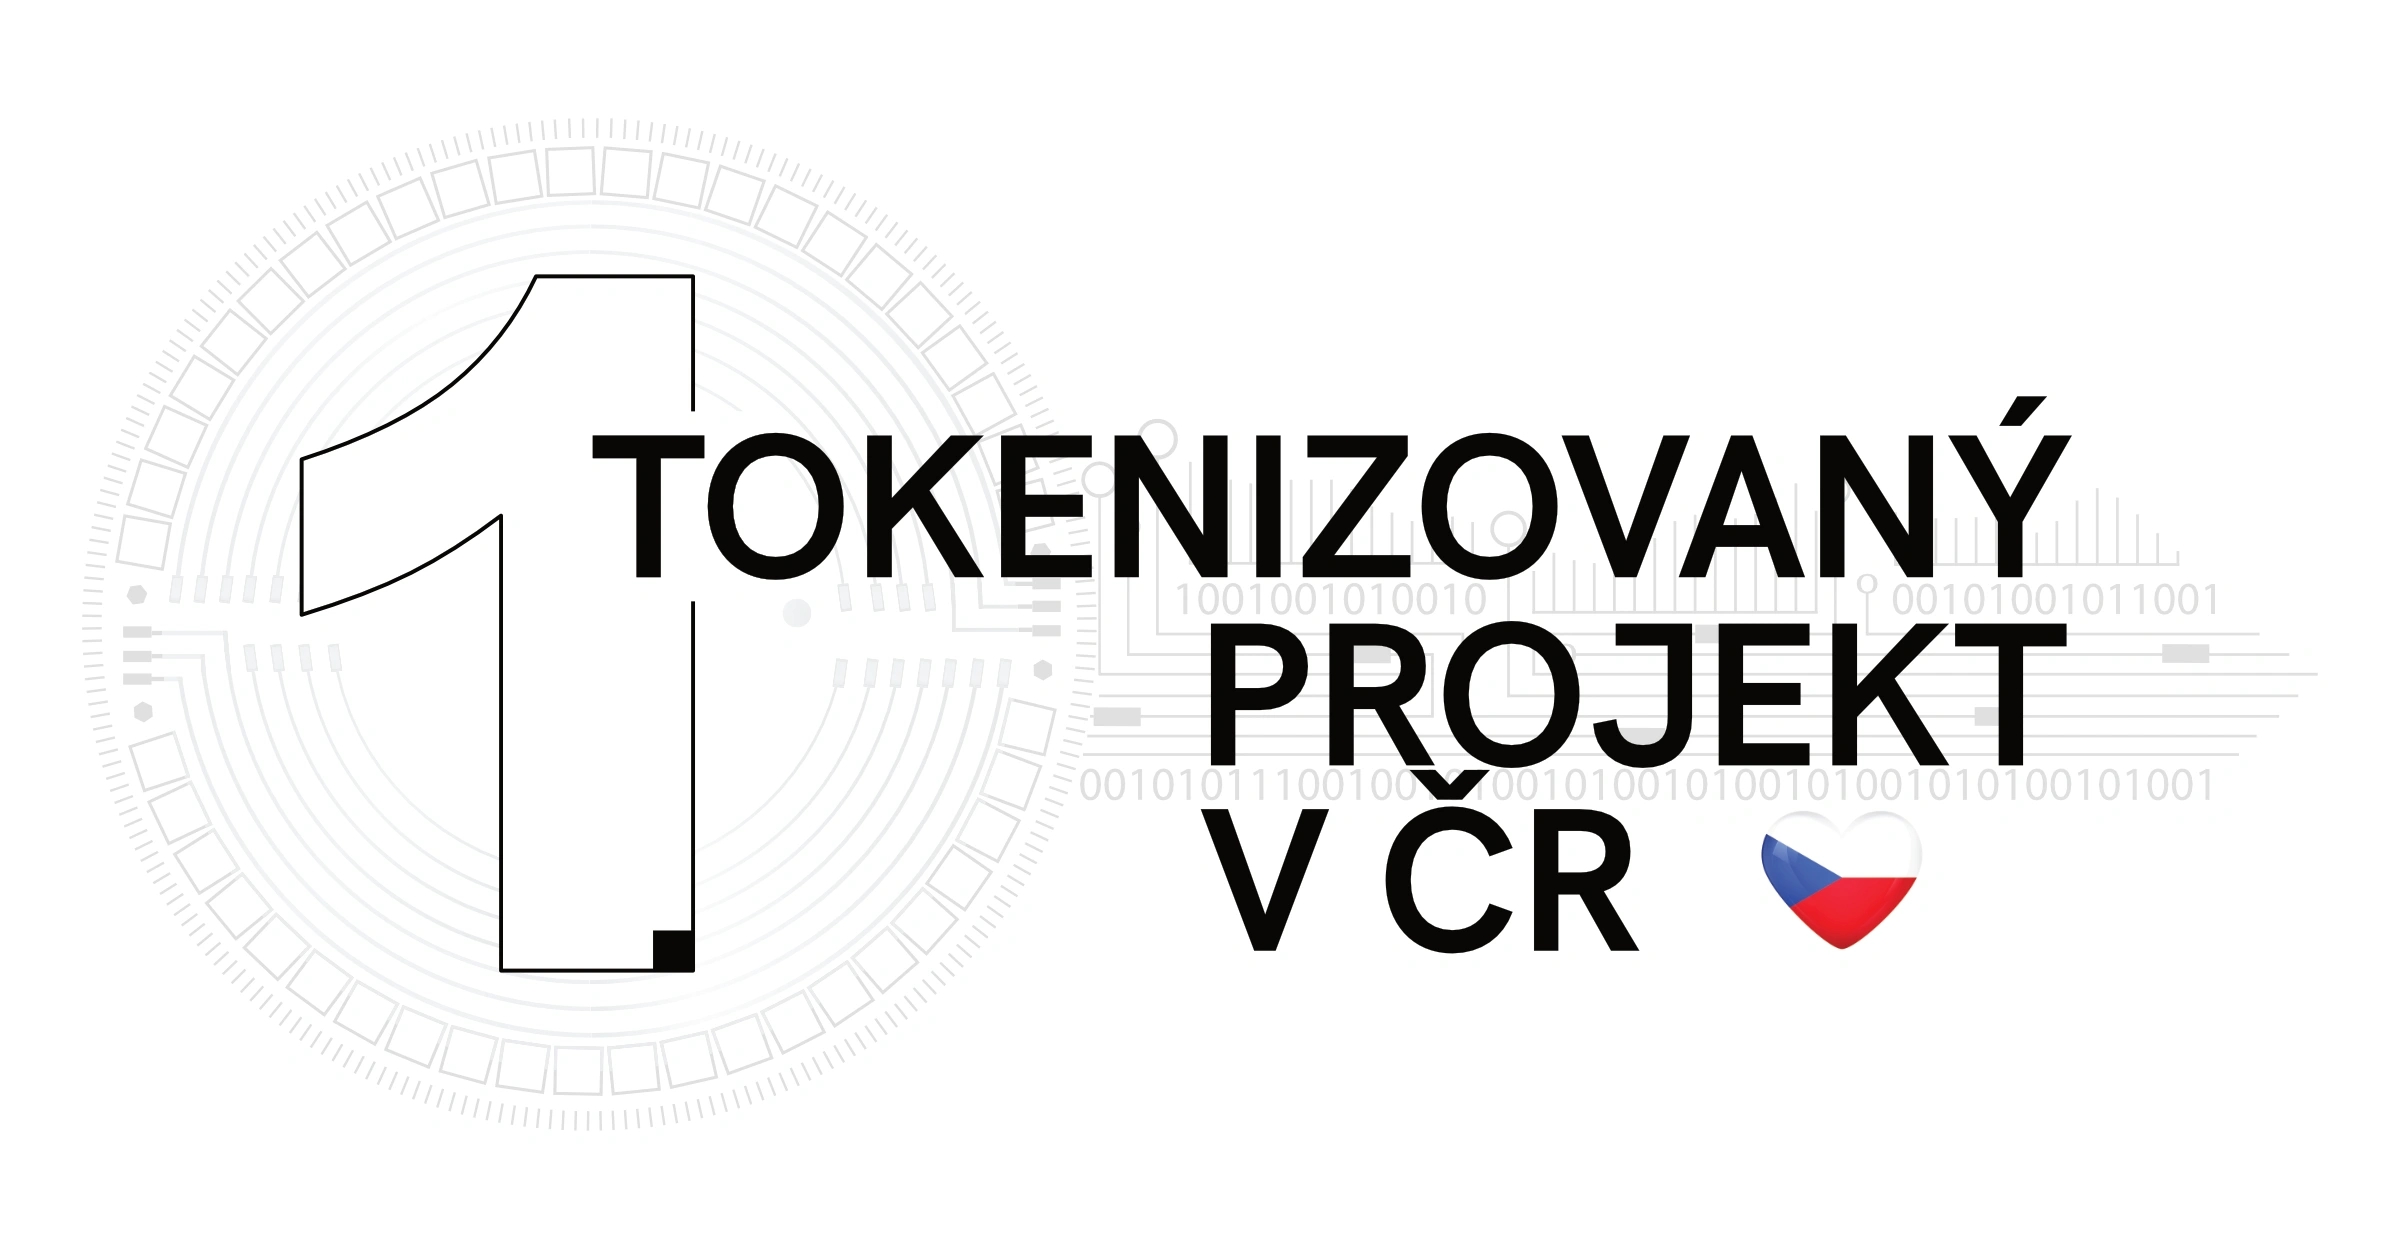 XIXOIO představí ve středu 16. 2. médiím a veřejnosti první tokenizovaný projekt